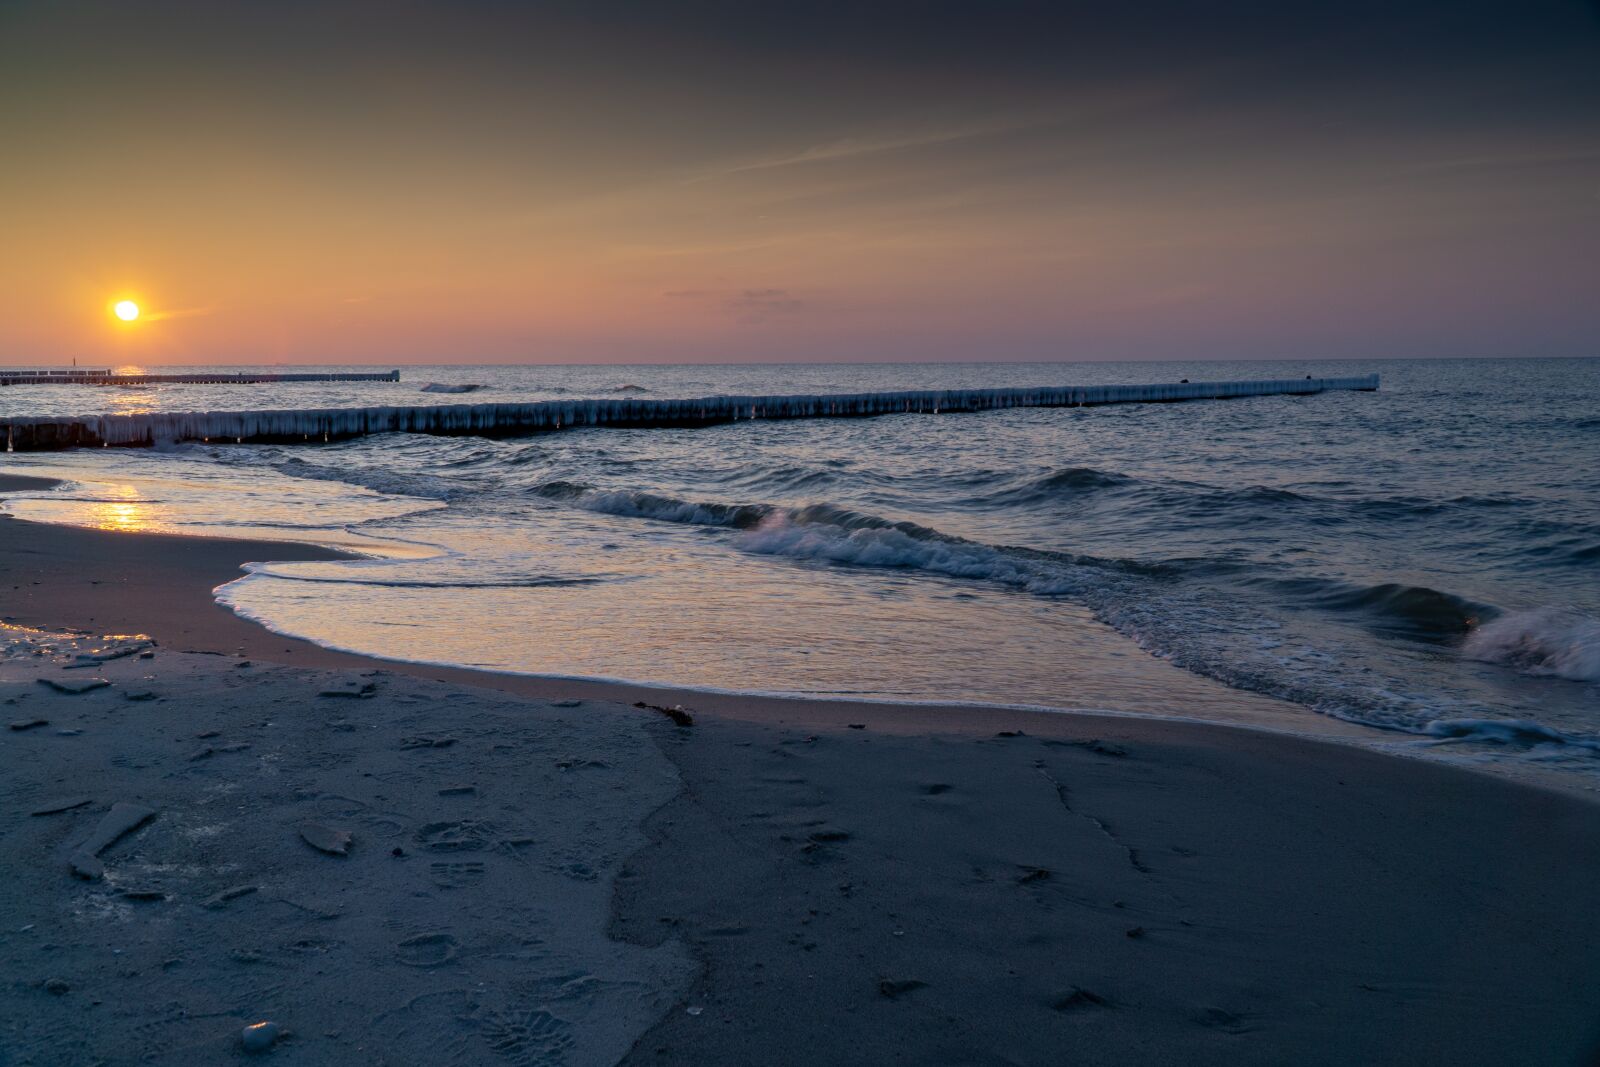 Sony a6000 sample photo. Beach, sunset, sea photography